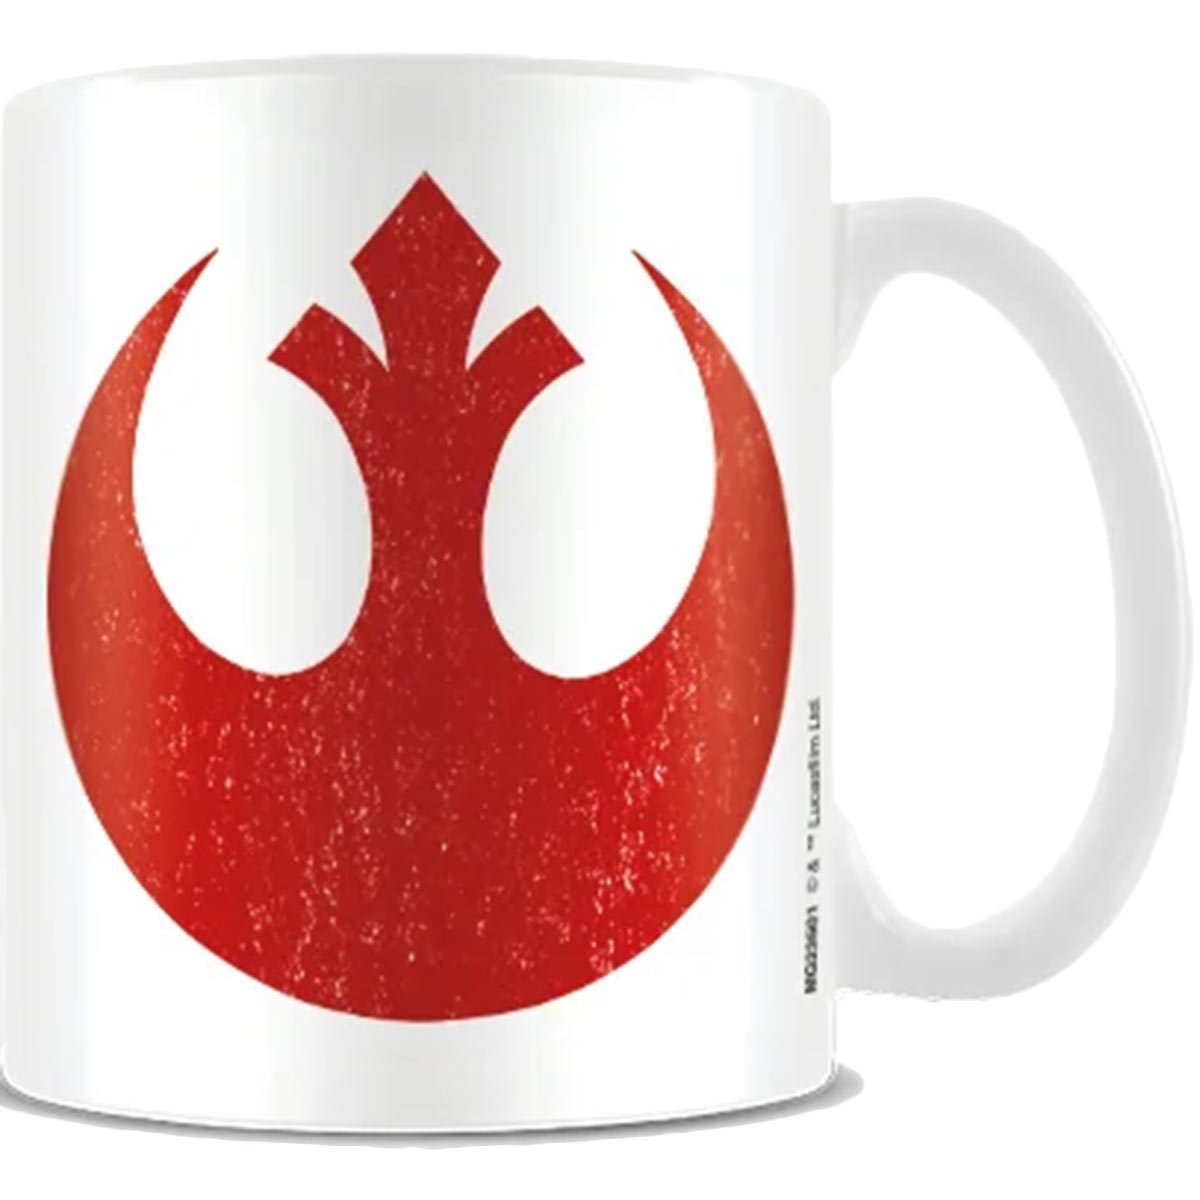 Star Wars Coffee Mug Darth Vader Boba Fett Stormtrooper Cup 